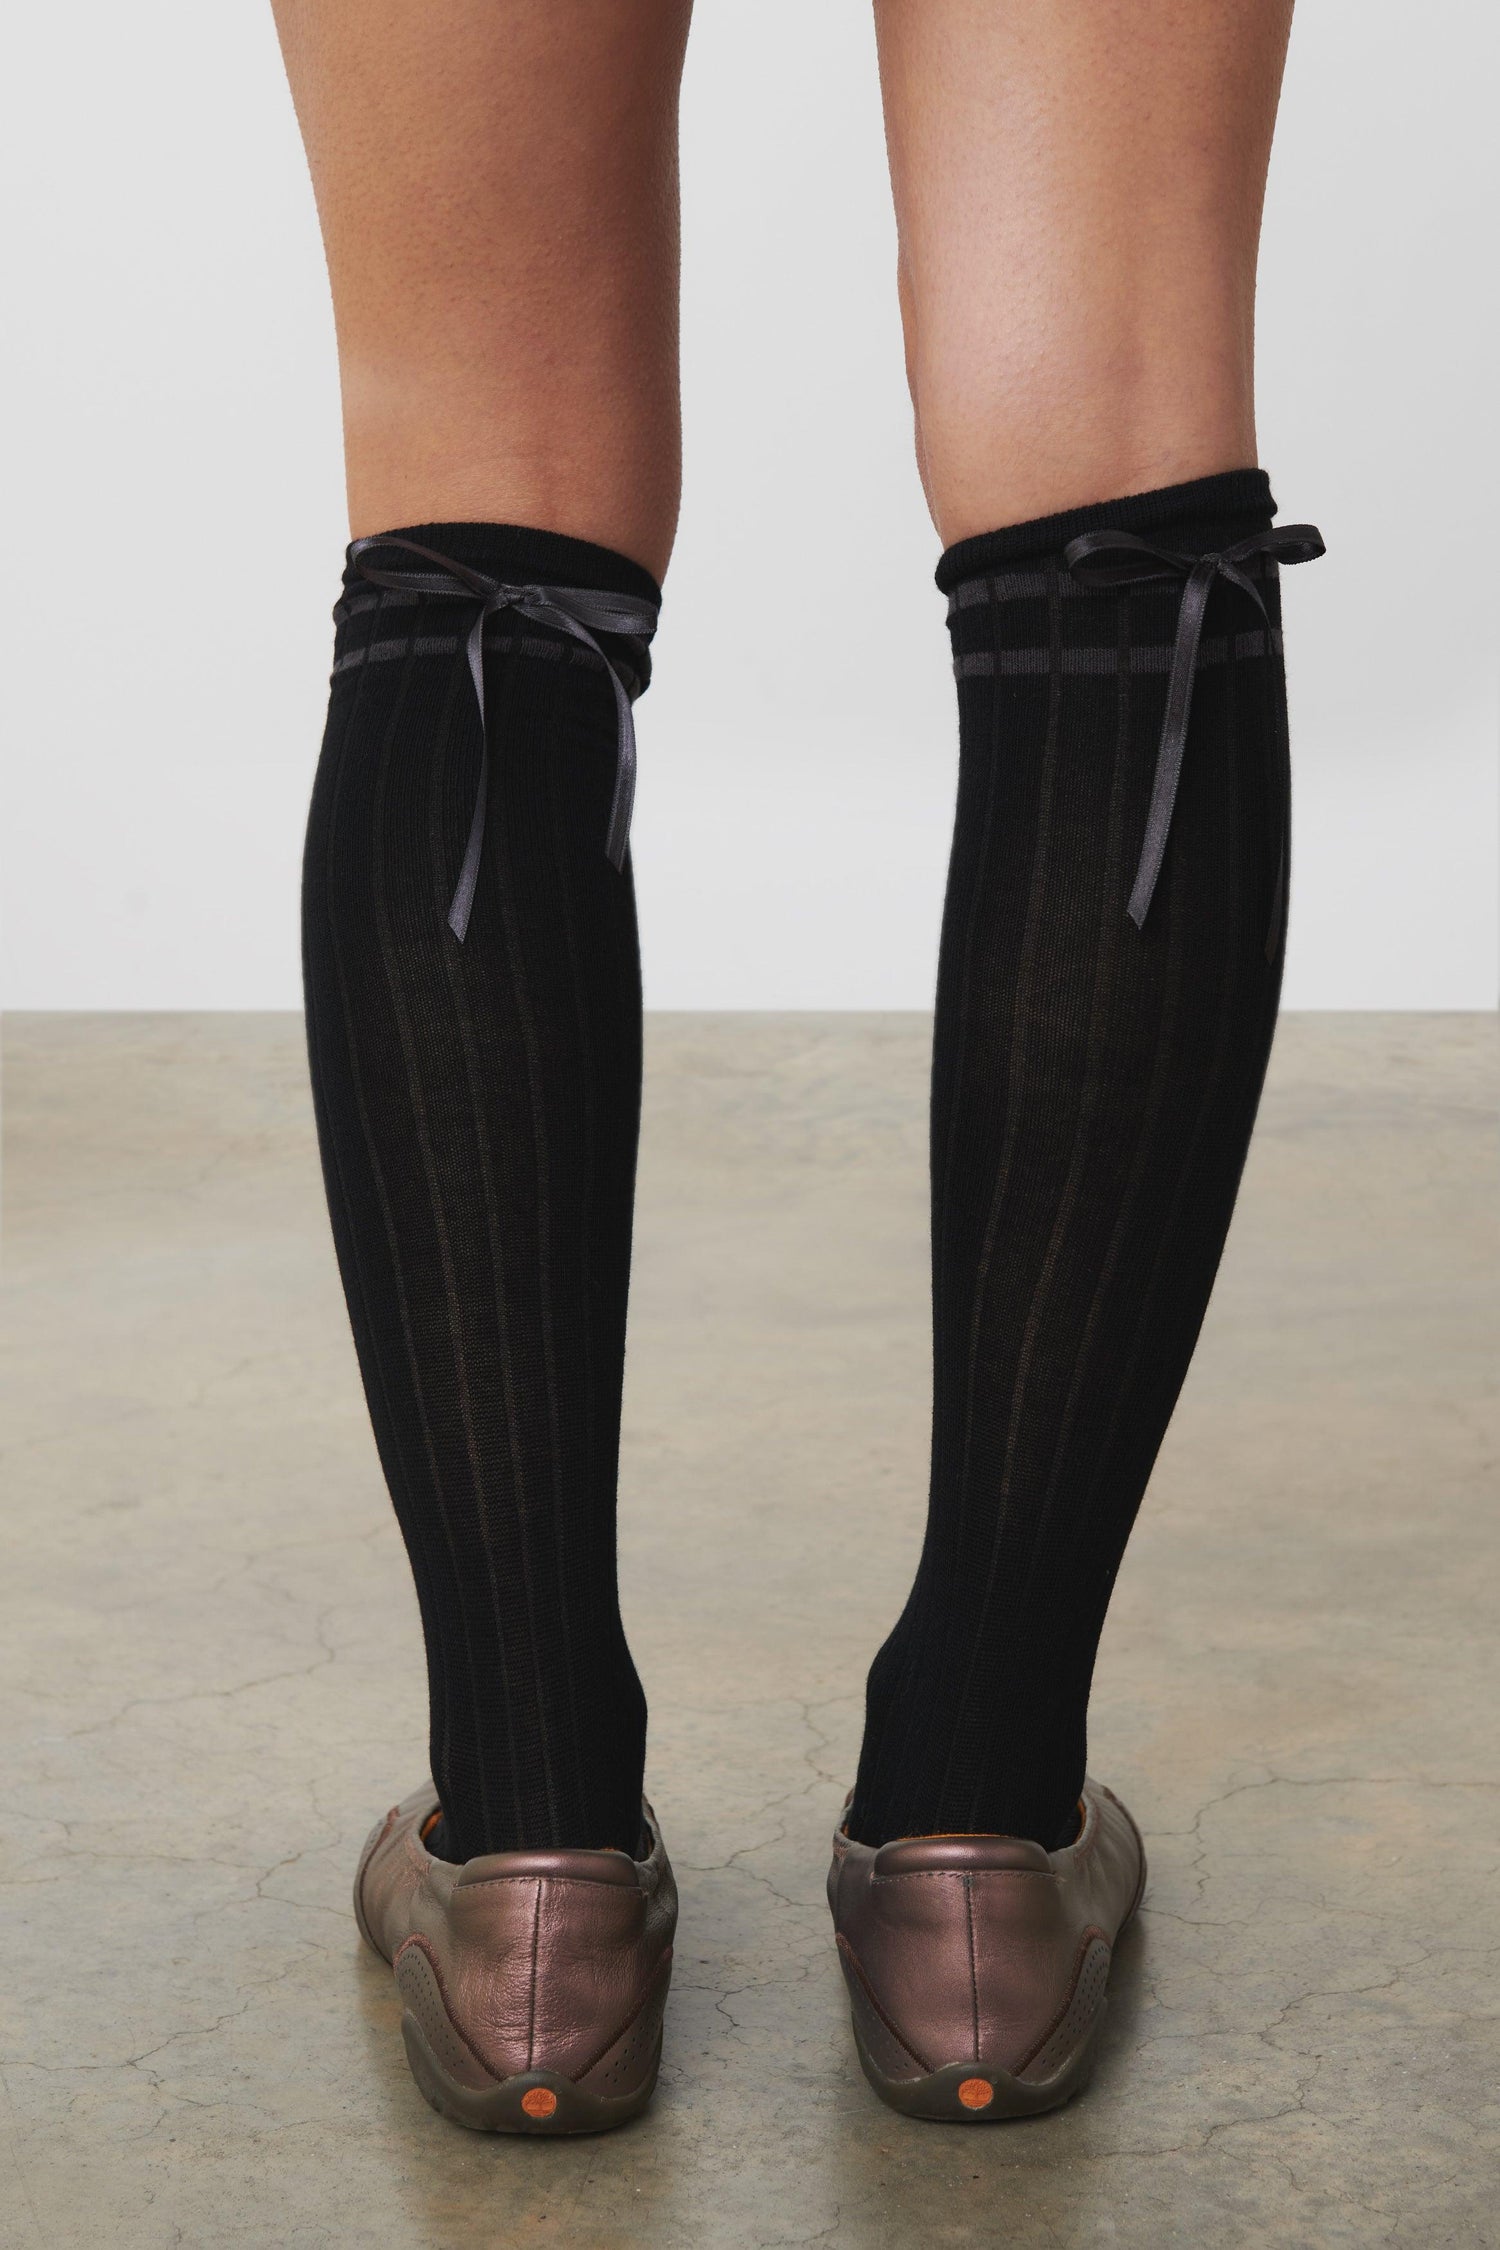 The Pippi Knee High Socks, Black - Peachy Den